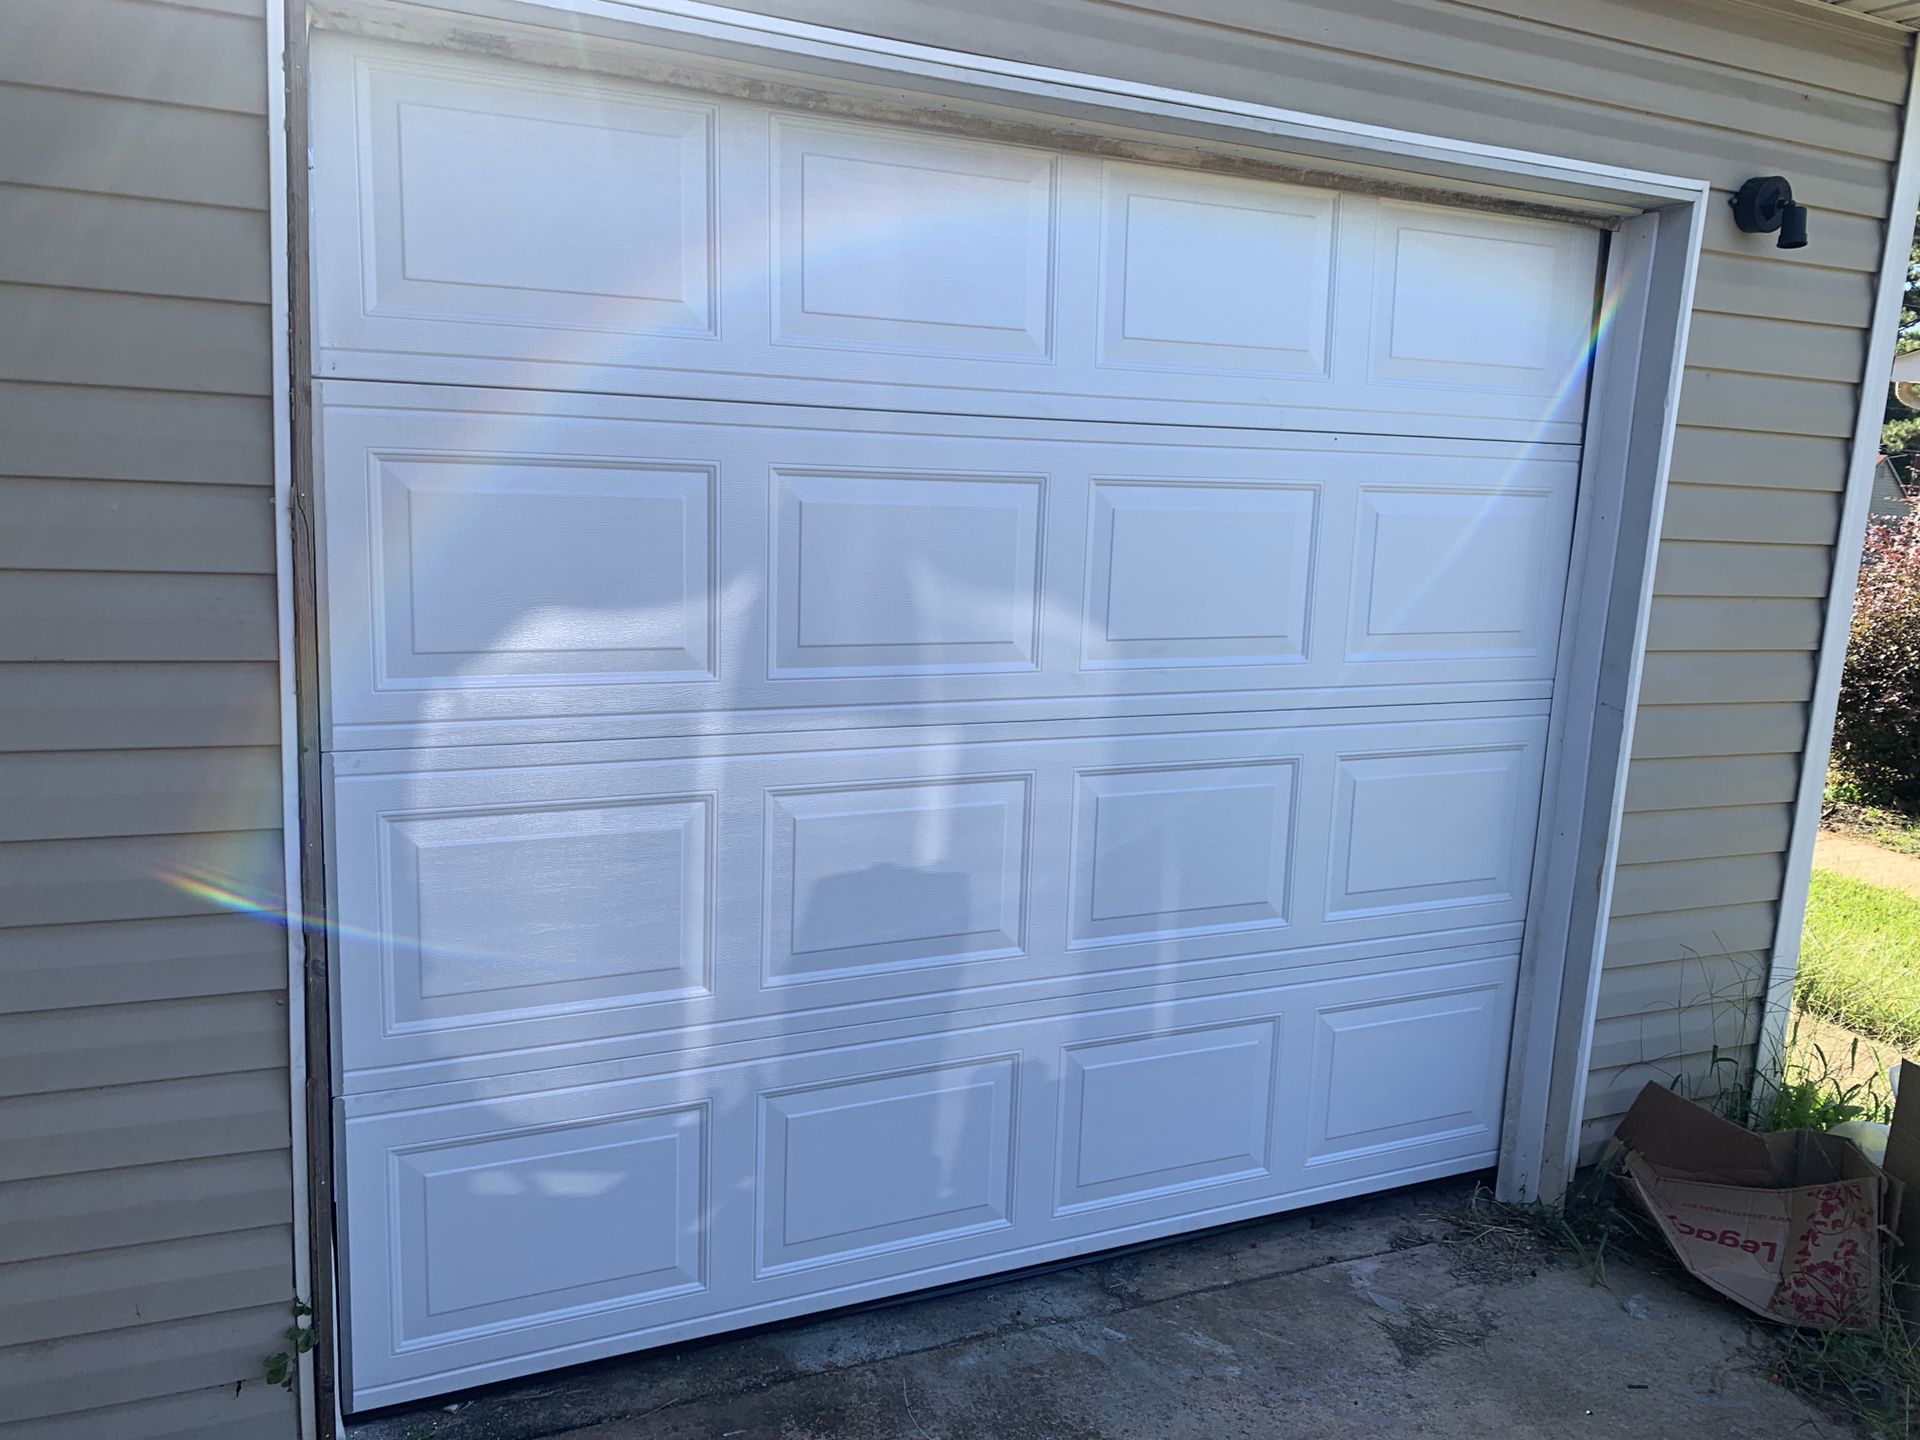 New Garage door replacement.